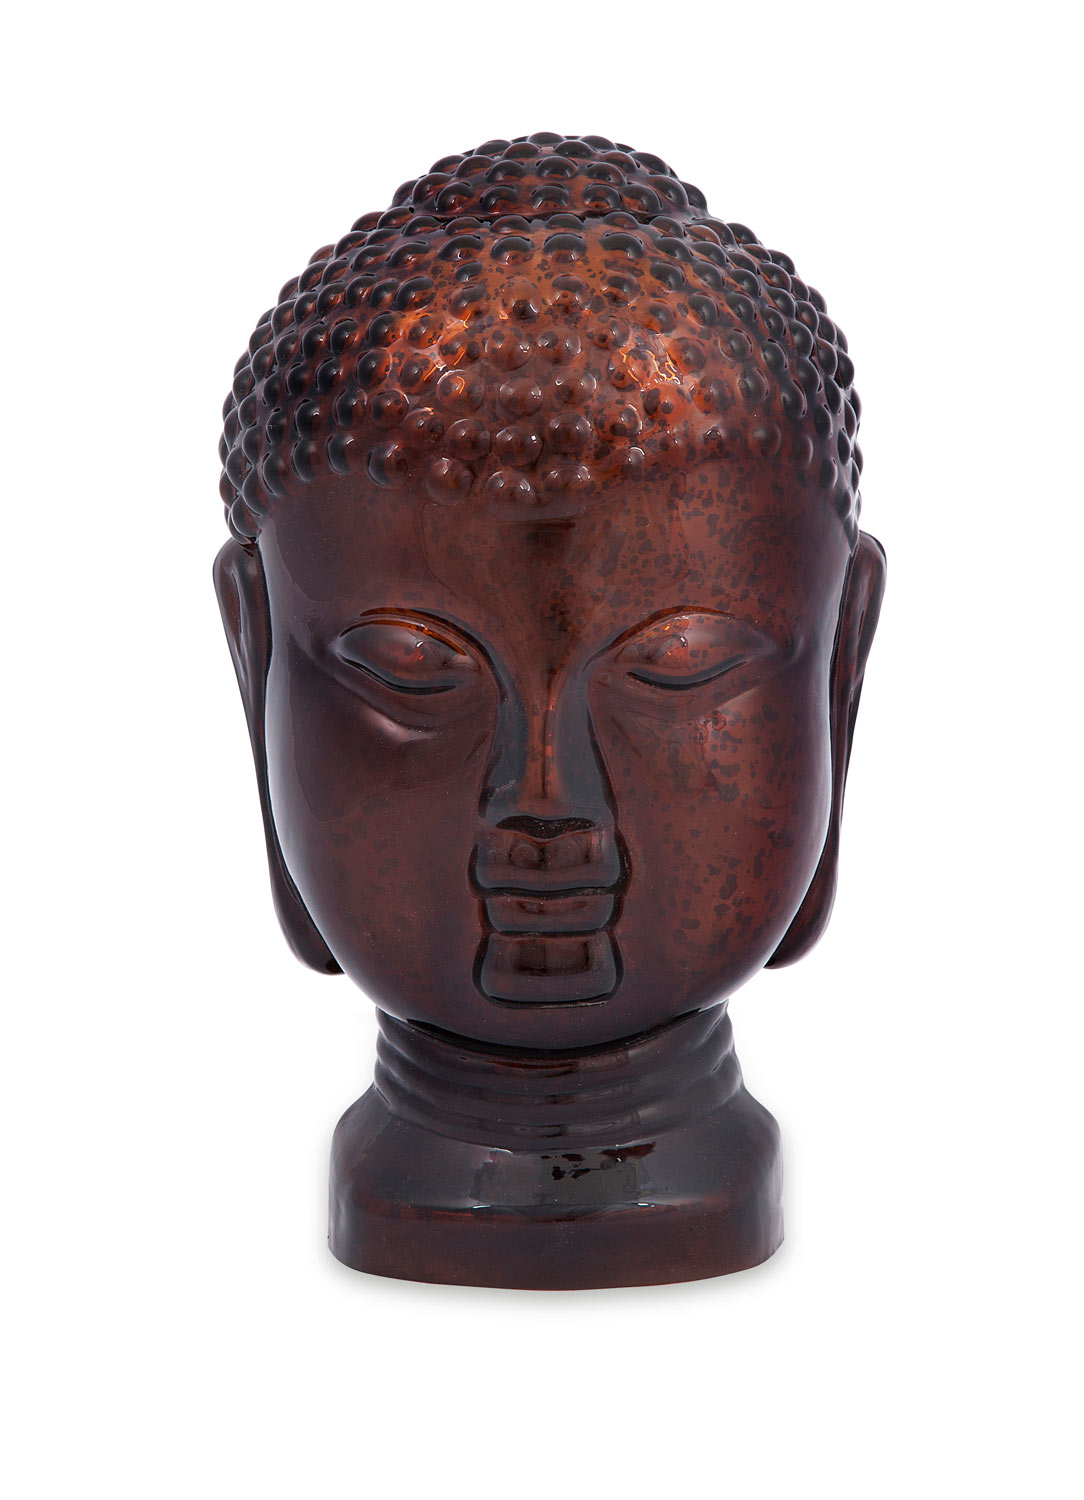 IMAX Mercury Glass Budha Head